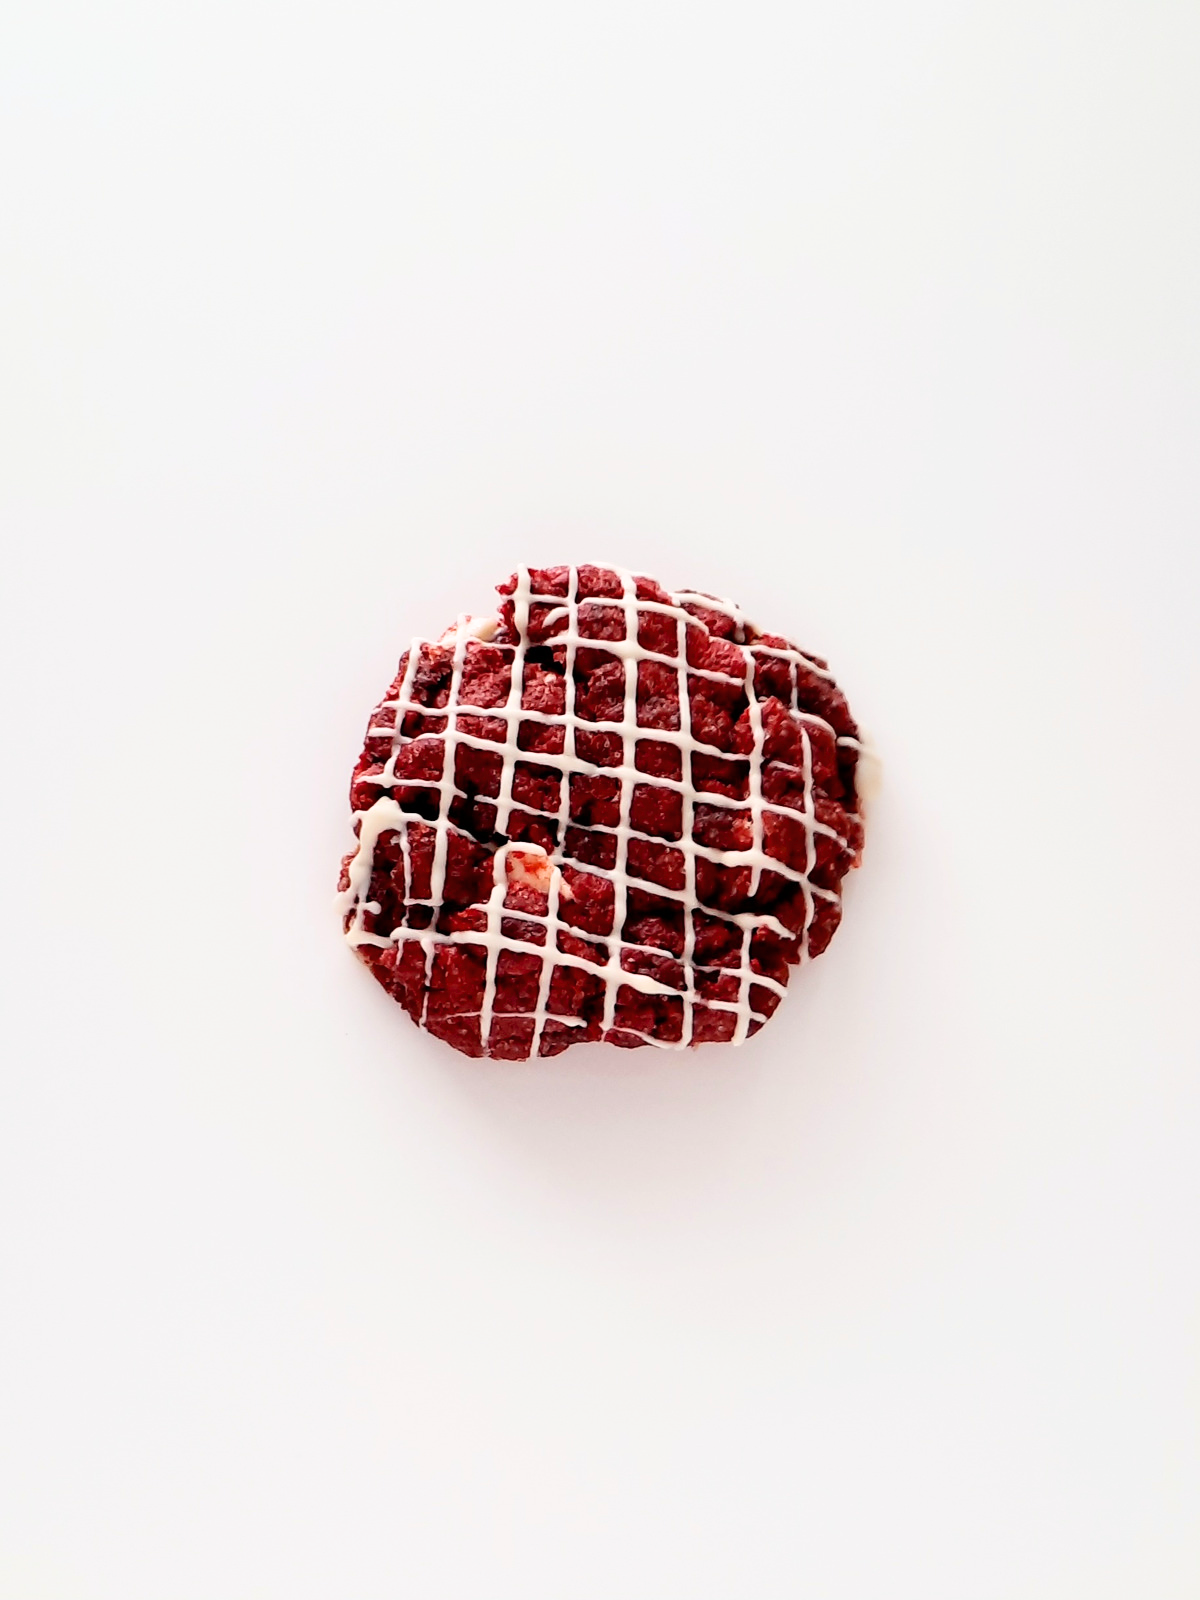 De ideale koek met zijn opvallende rode kleur: Red Velvet! 